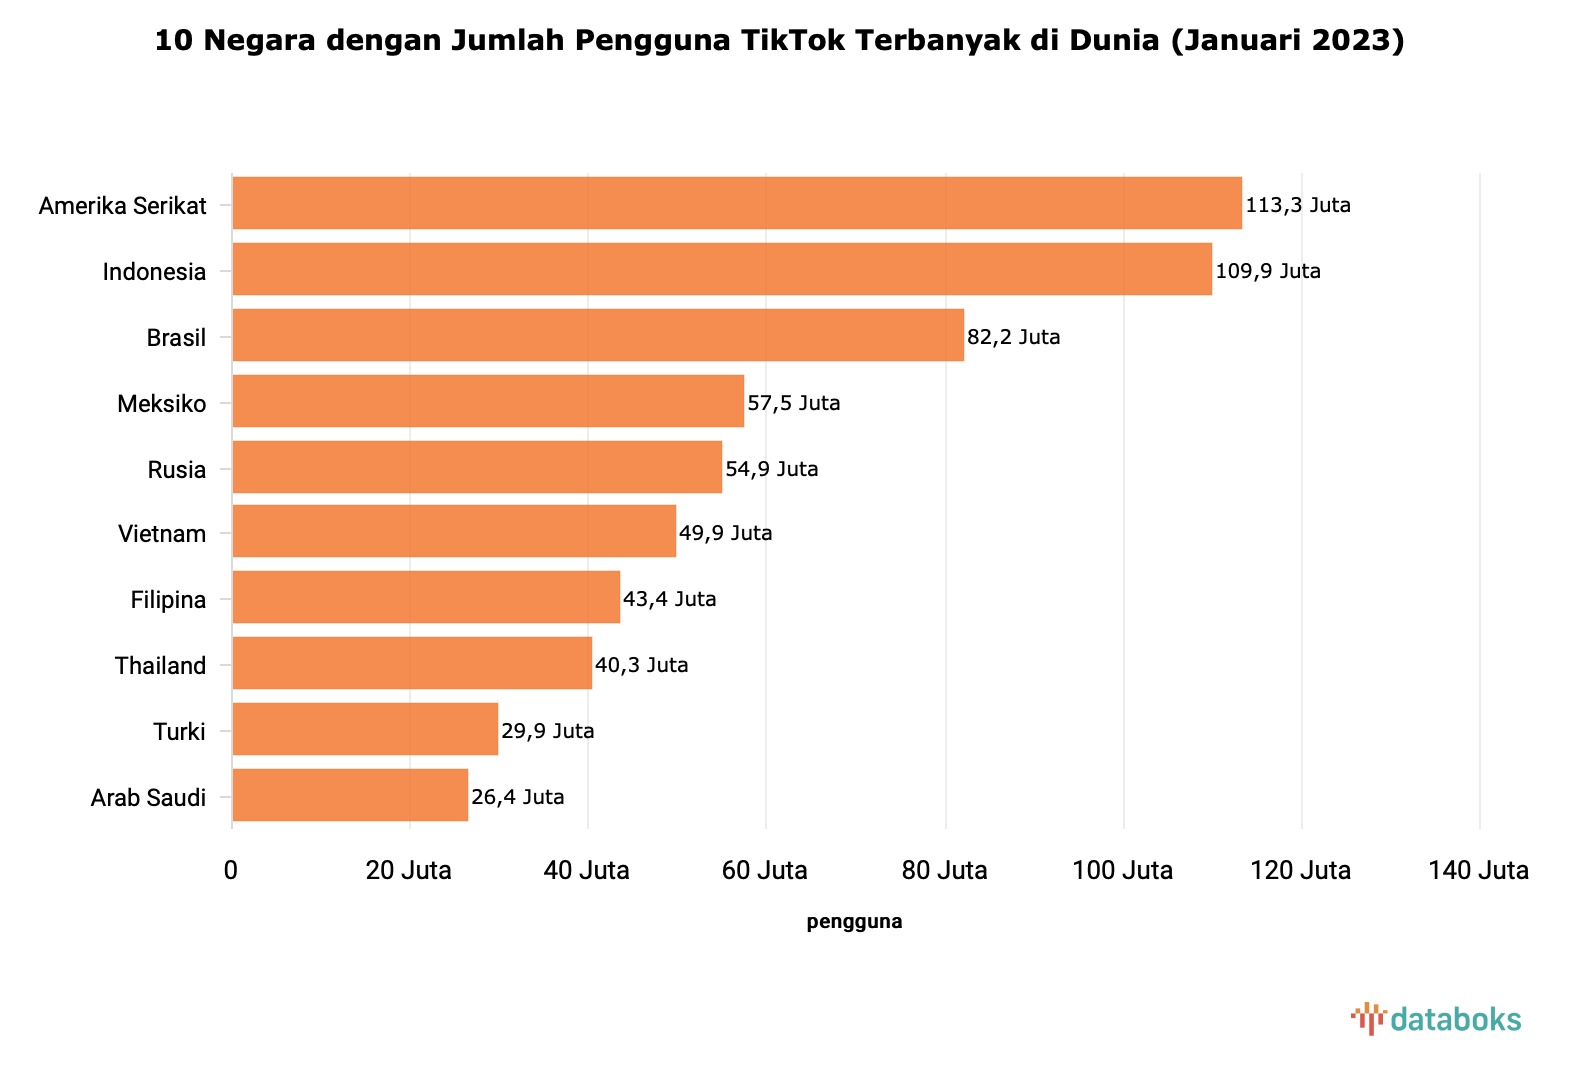 Source: https://databoks.katadata.co.id/datapublish/2023/02/27/indonesia-sabet-posisi-kedua-sebagai-negara-pengguna-tiktok-terbanyak-di-dunia-pada-awal-2023